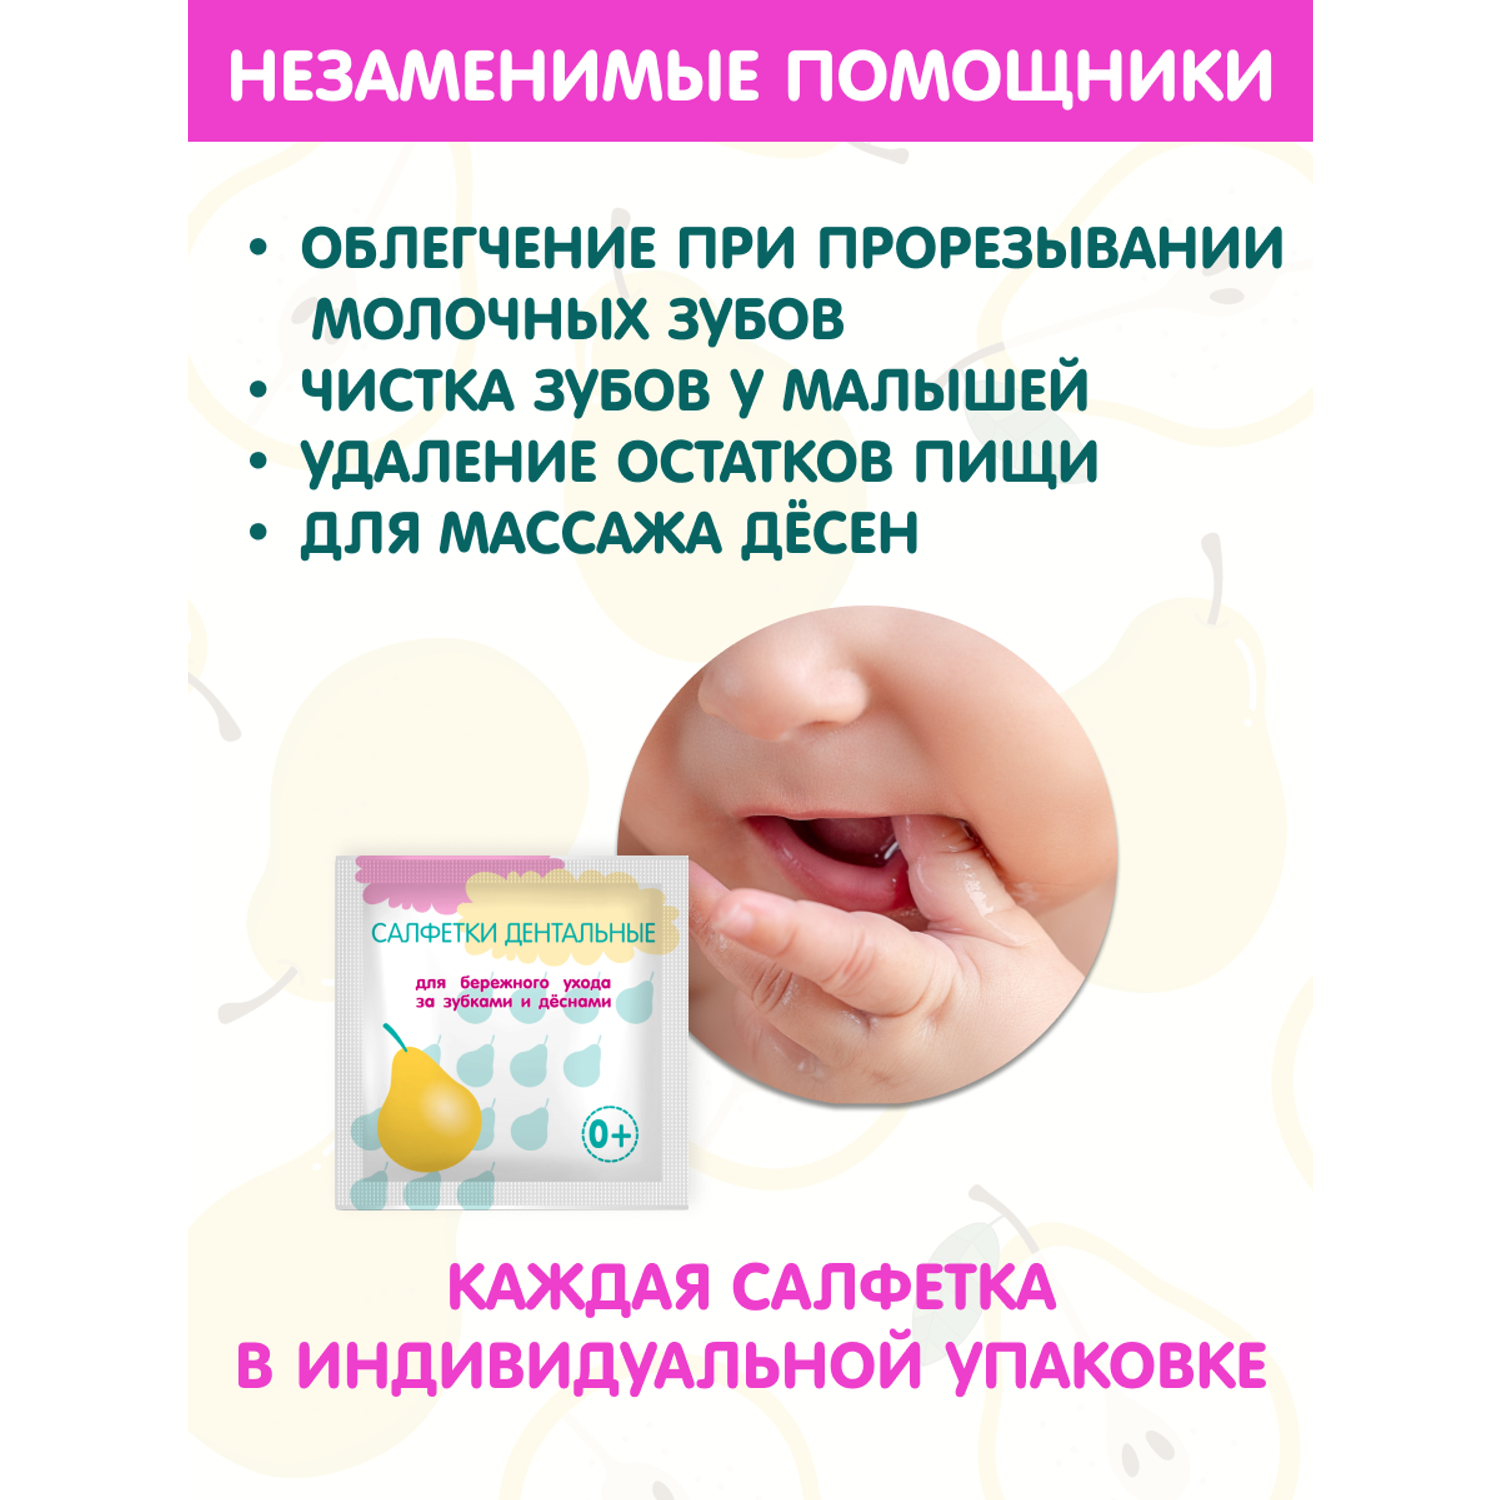 Салфетки дентальные INSEENSE детские для ухода за зубками и деснами 2 уп по 20 шт - фото 2